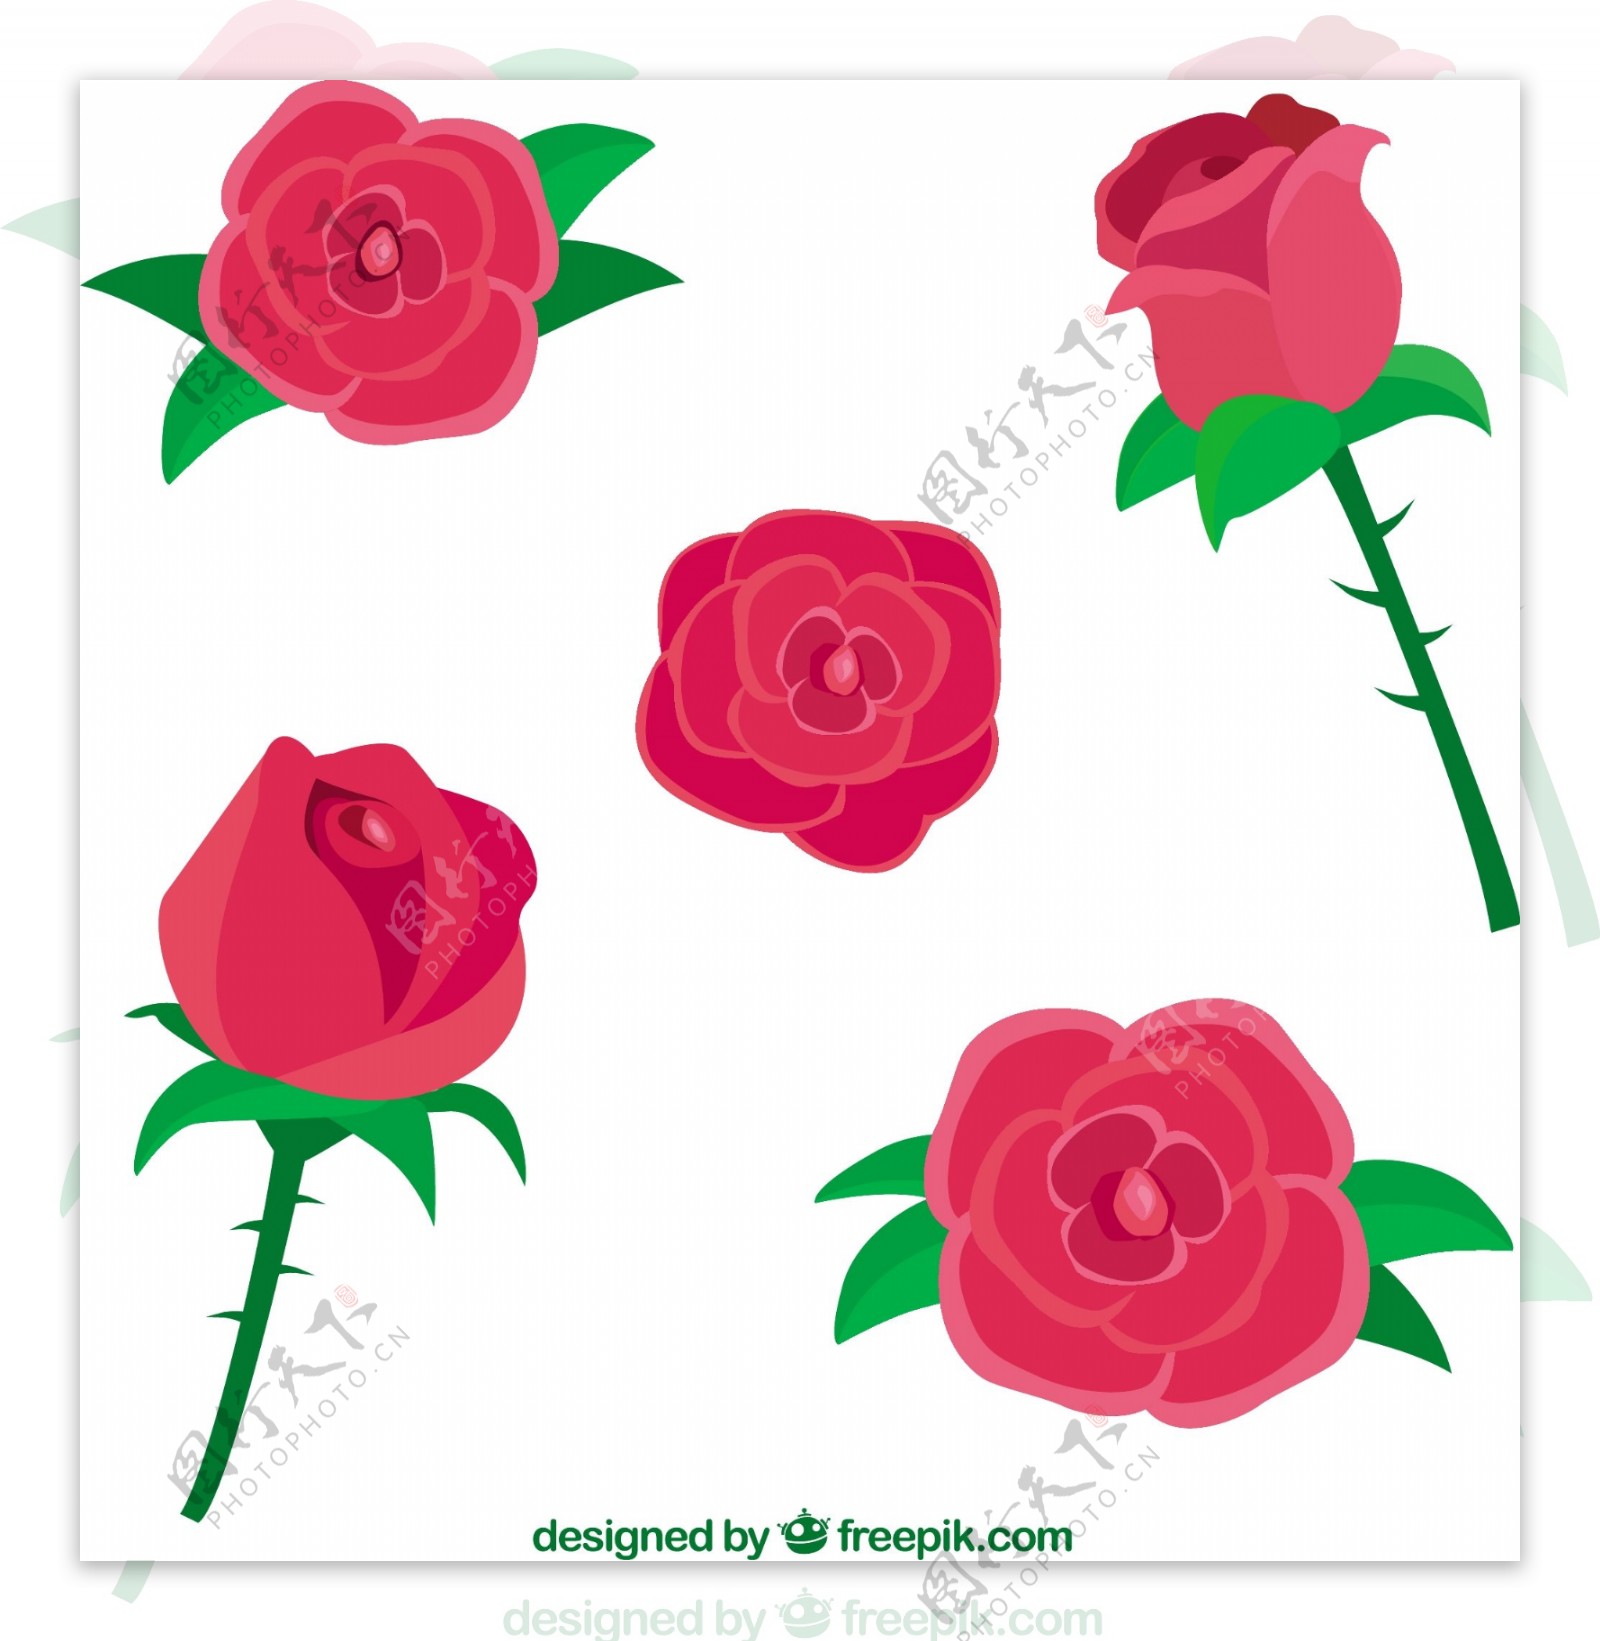 手绘漂亮的五朵玫瑰设计素材